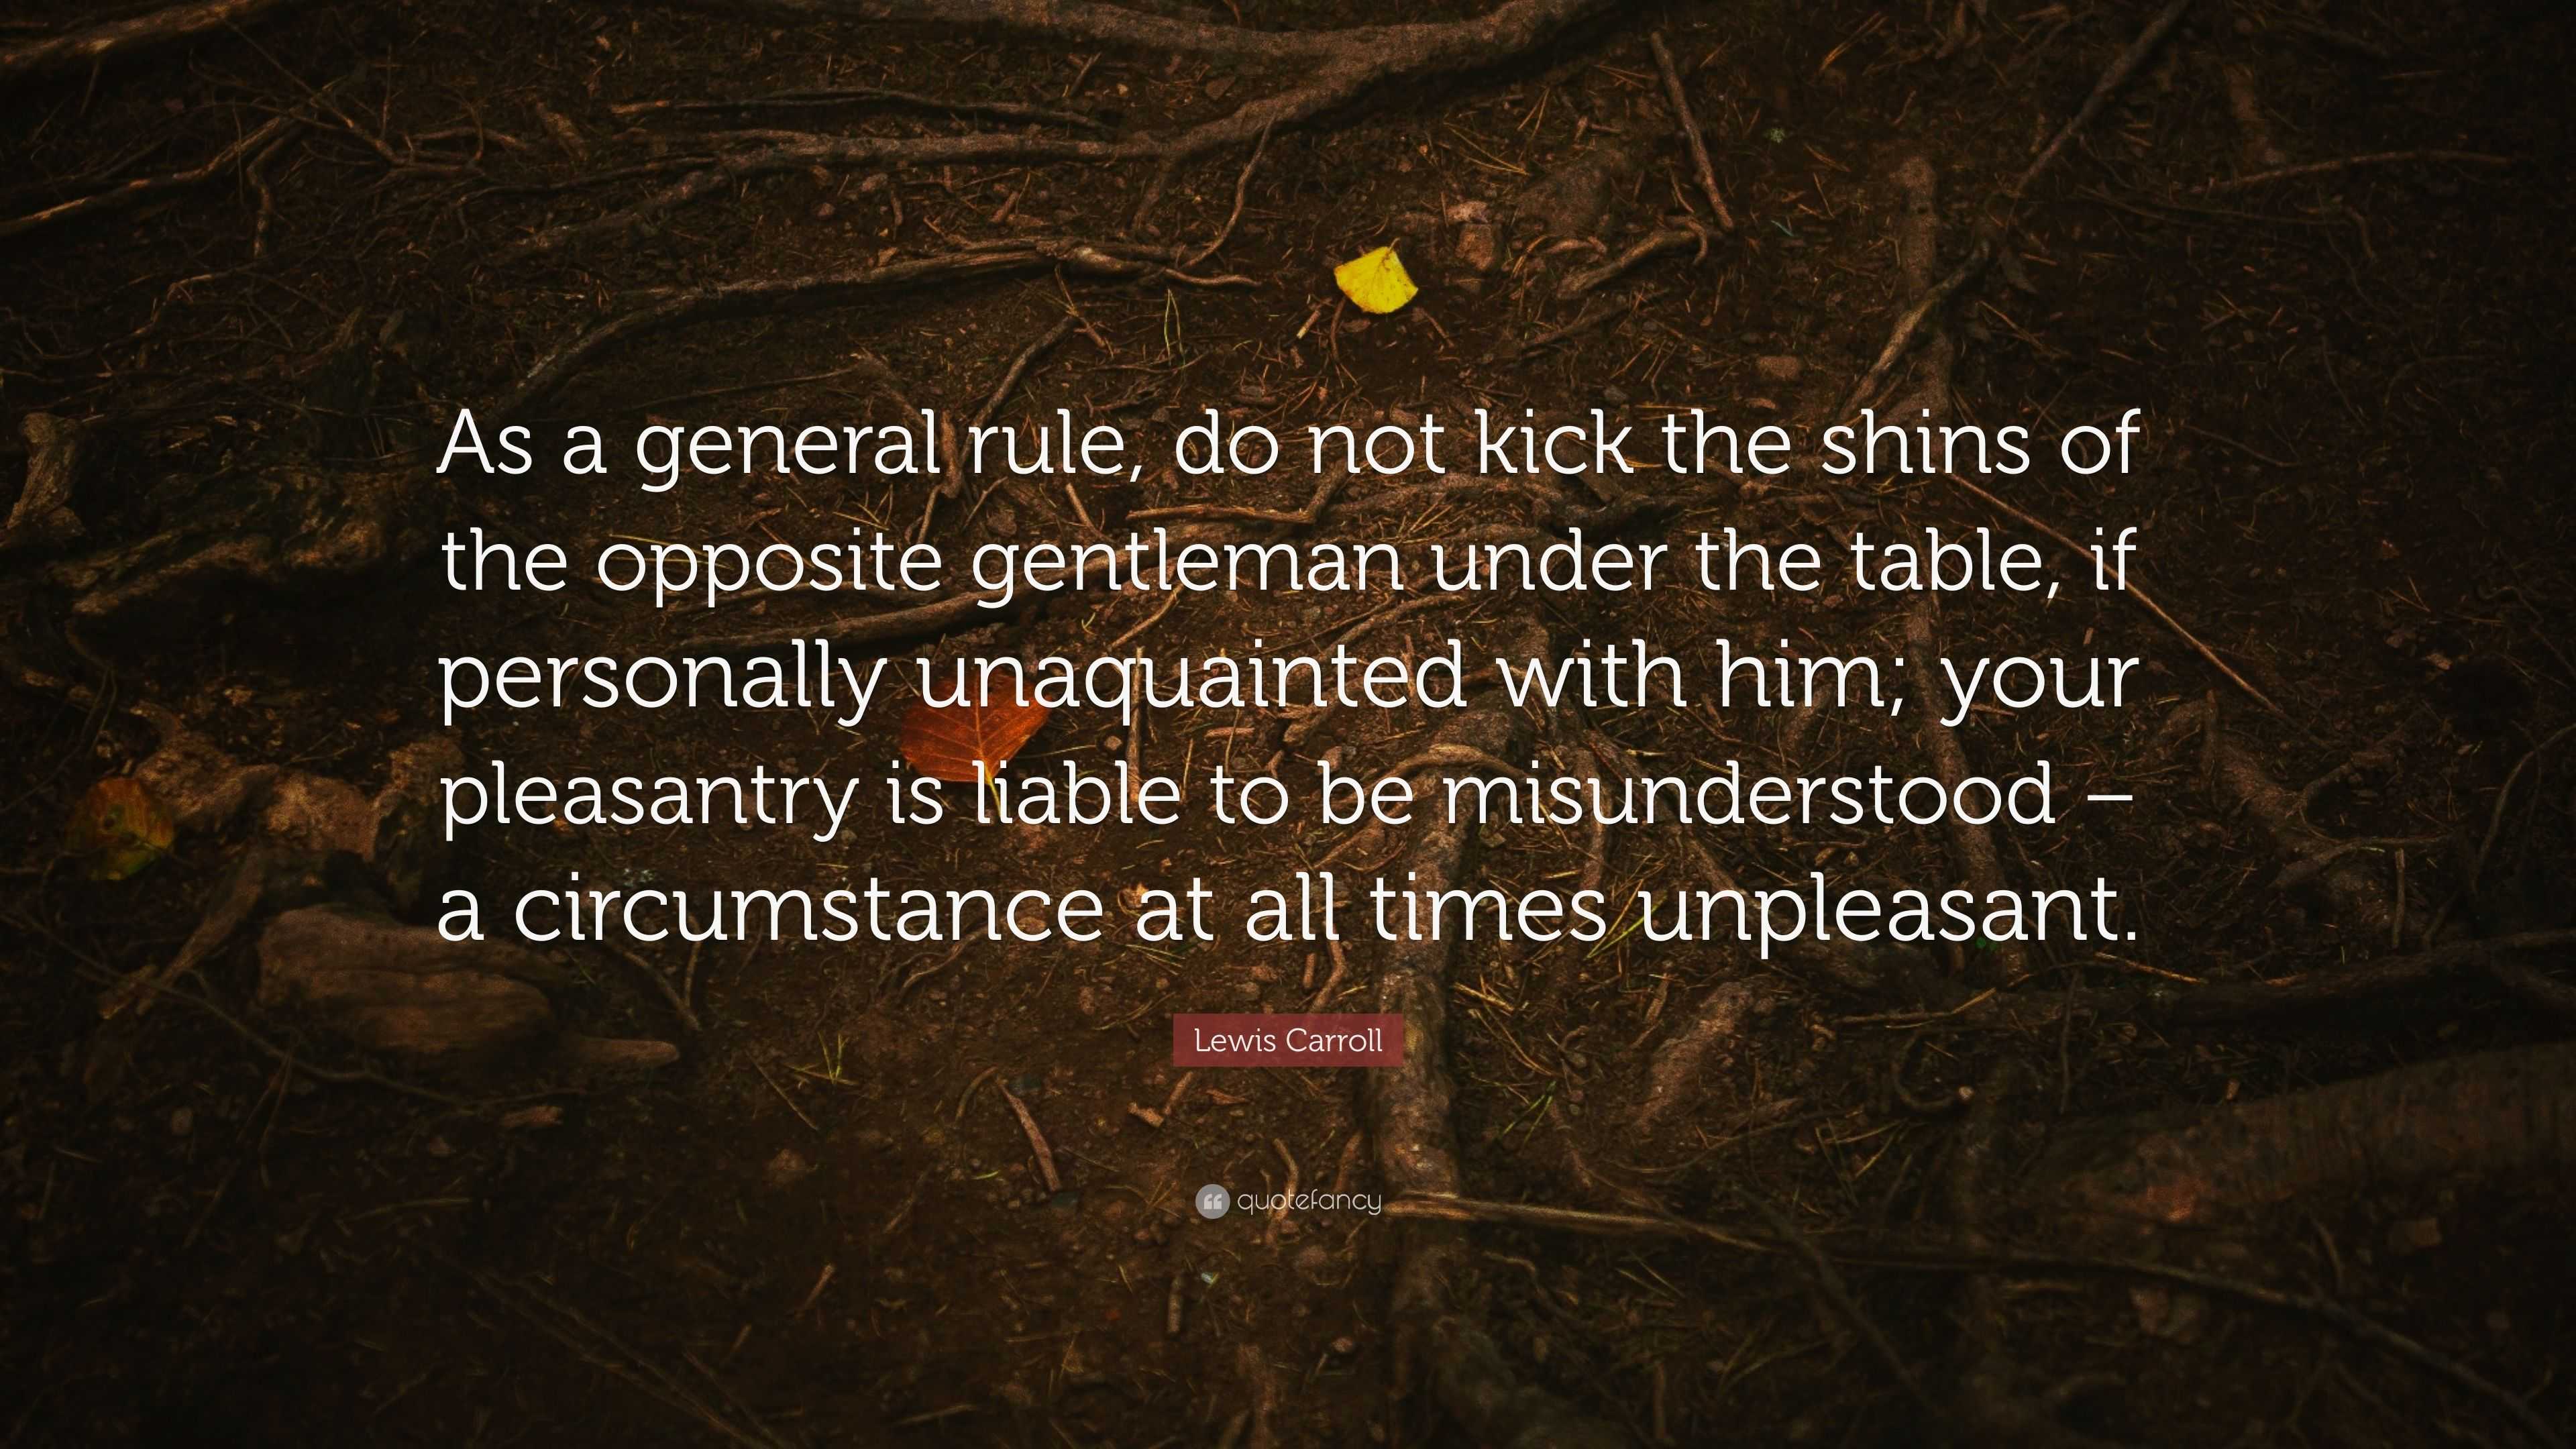 rules of gentlemen quotes